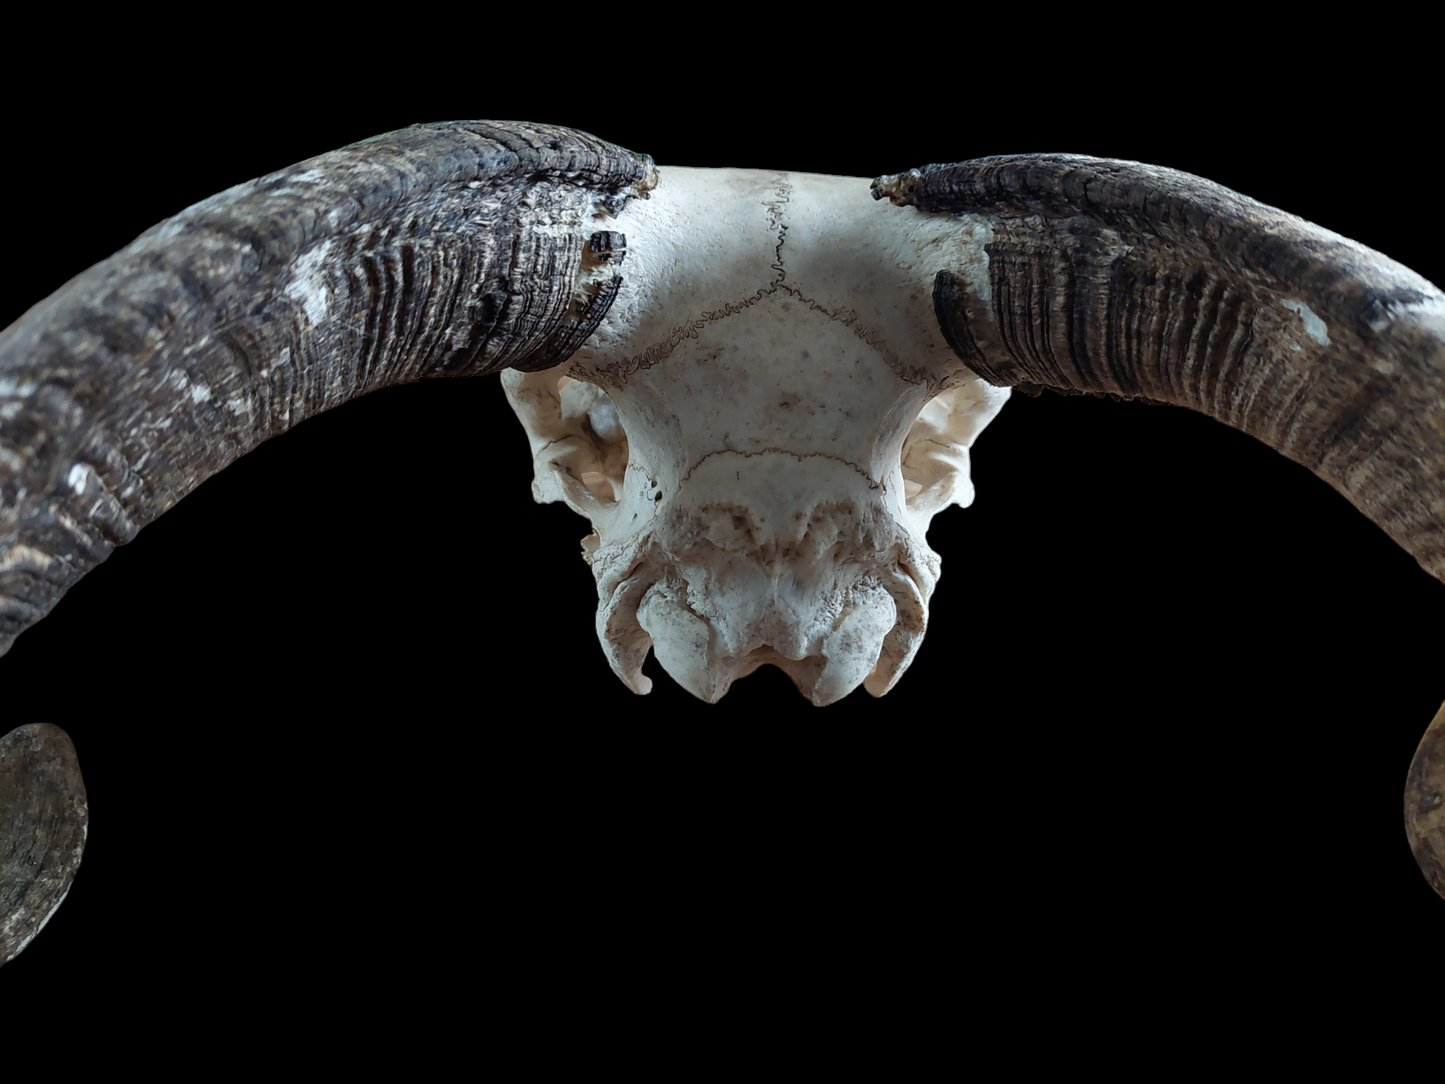 Sheep skull #2